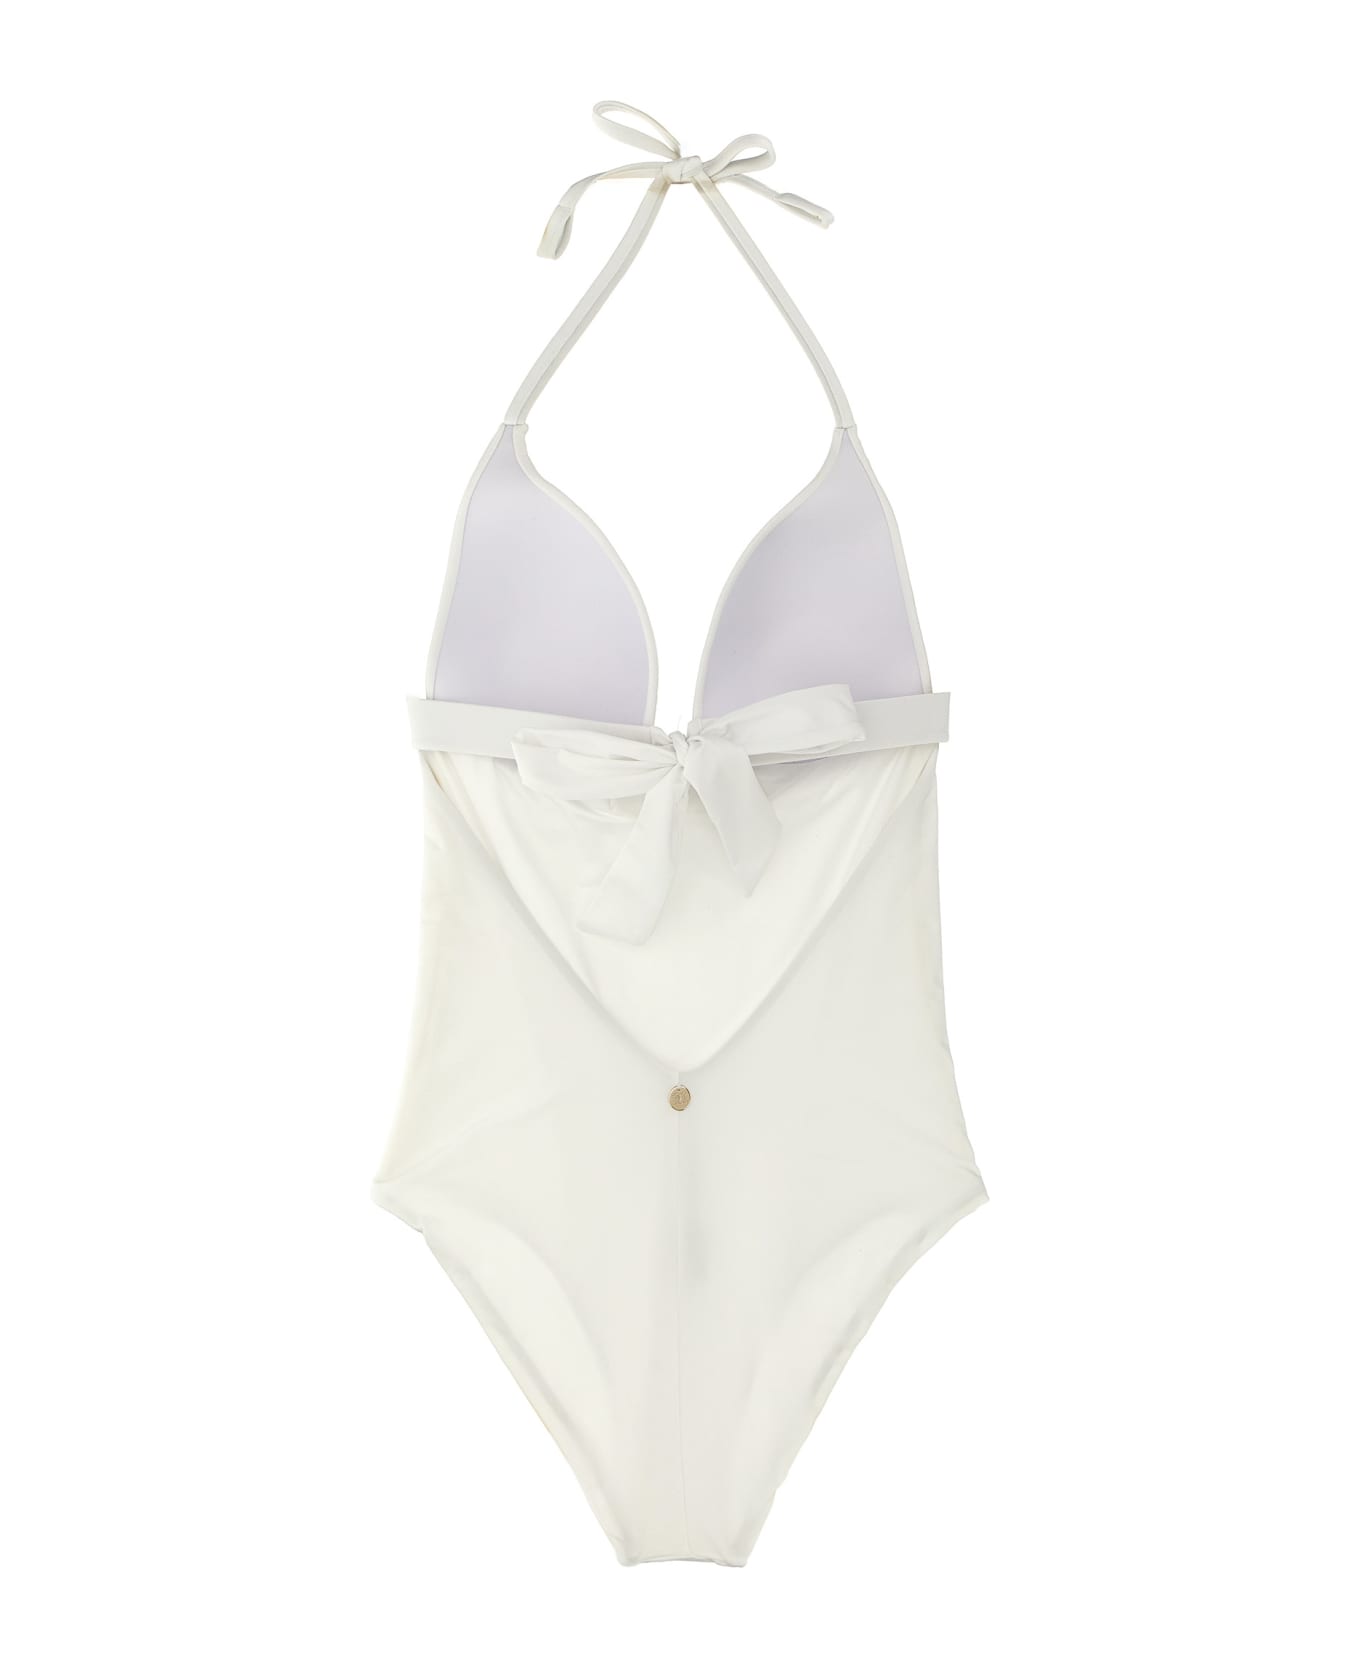 Max Mara 'cecilia' One-piece Swimsuit - White ブラジャー